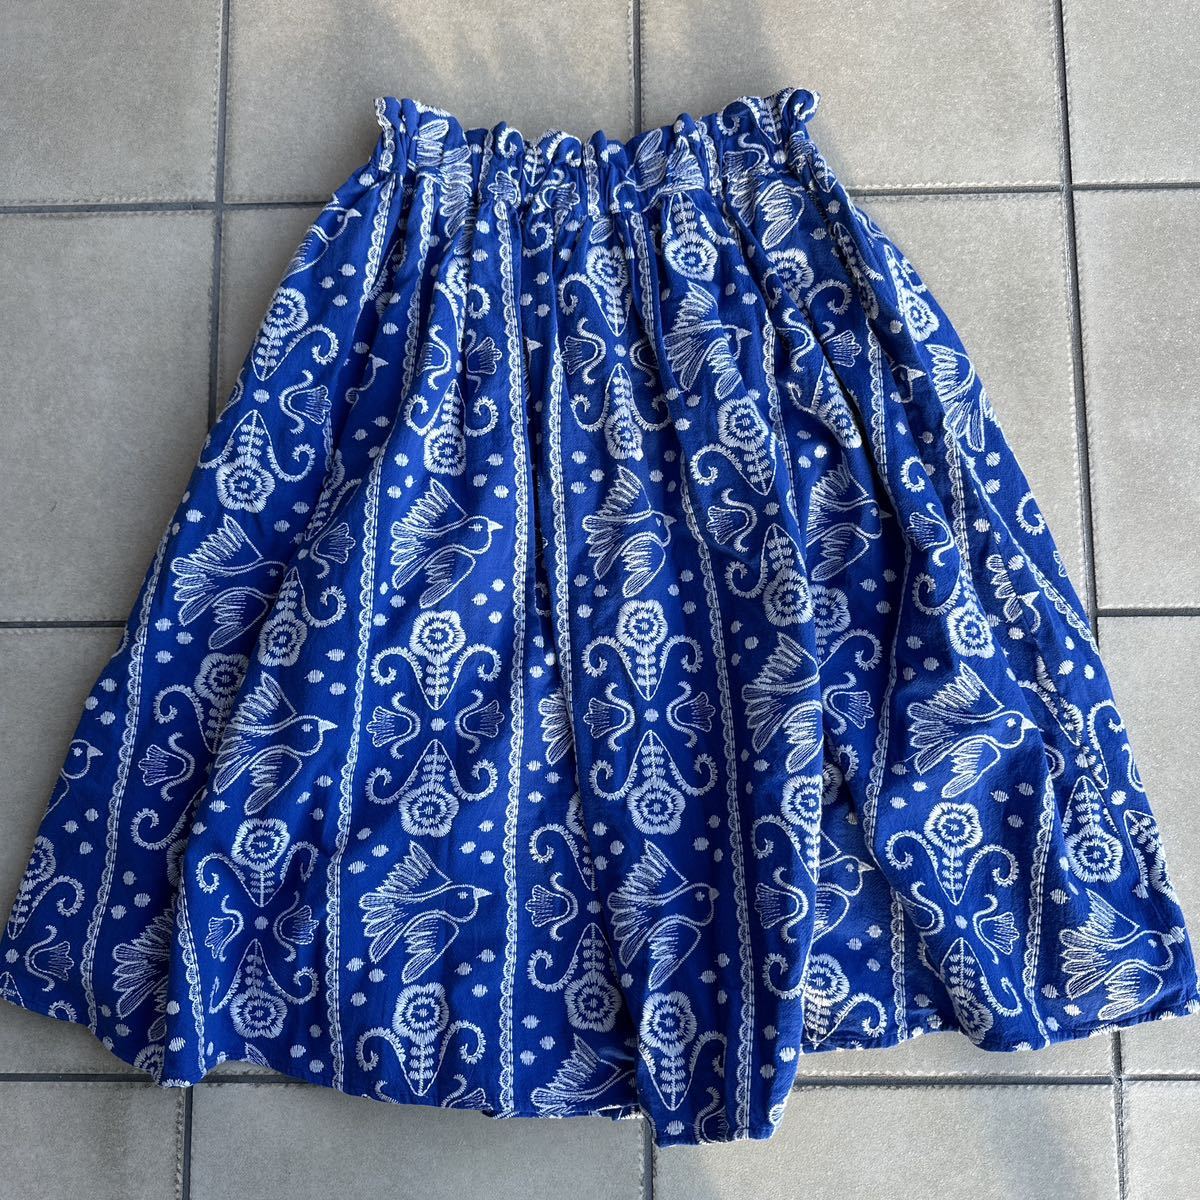  новый товар не прибывший Child Woman CHILD WOMAN bird цветок вышивка юбка в сборку размер свободный синий обычная цена,13.800+ налог 